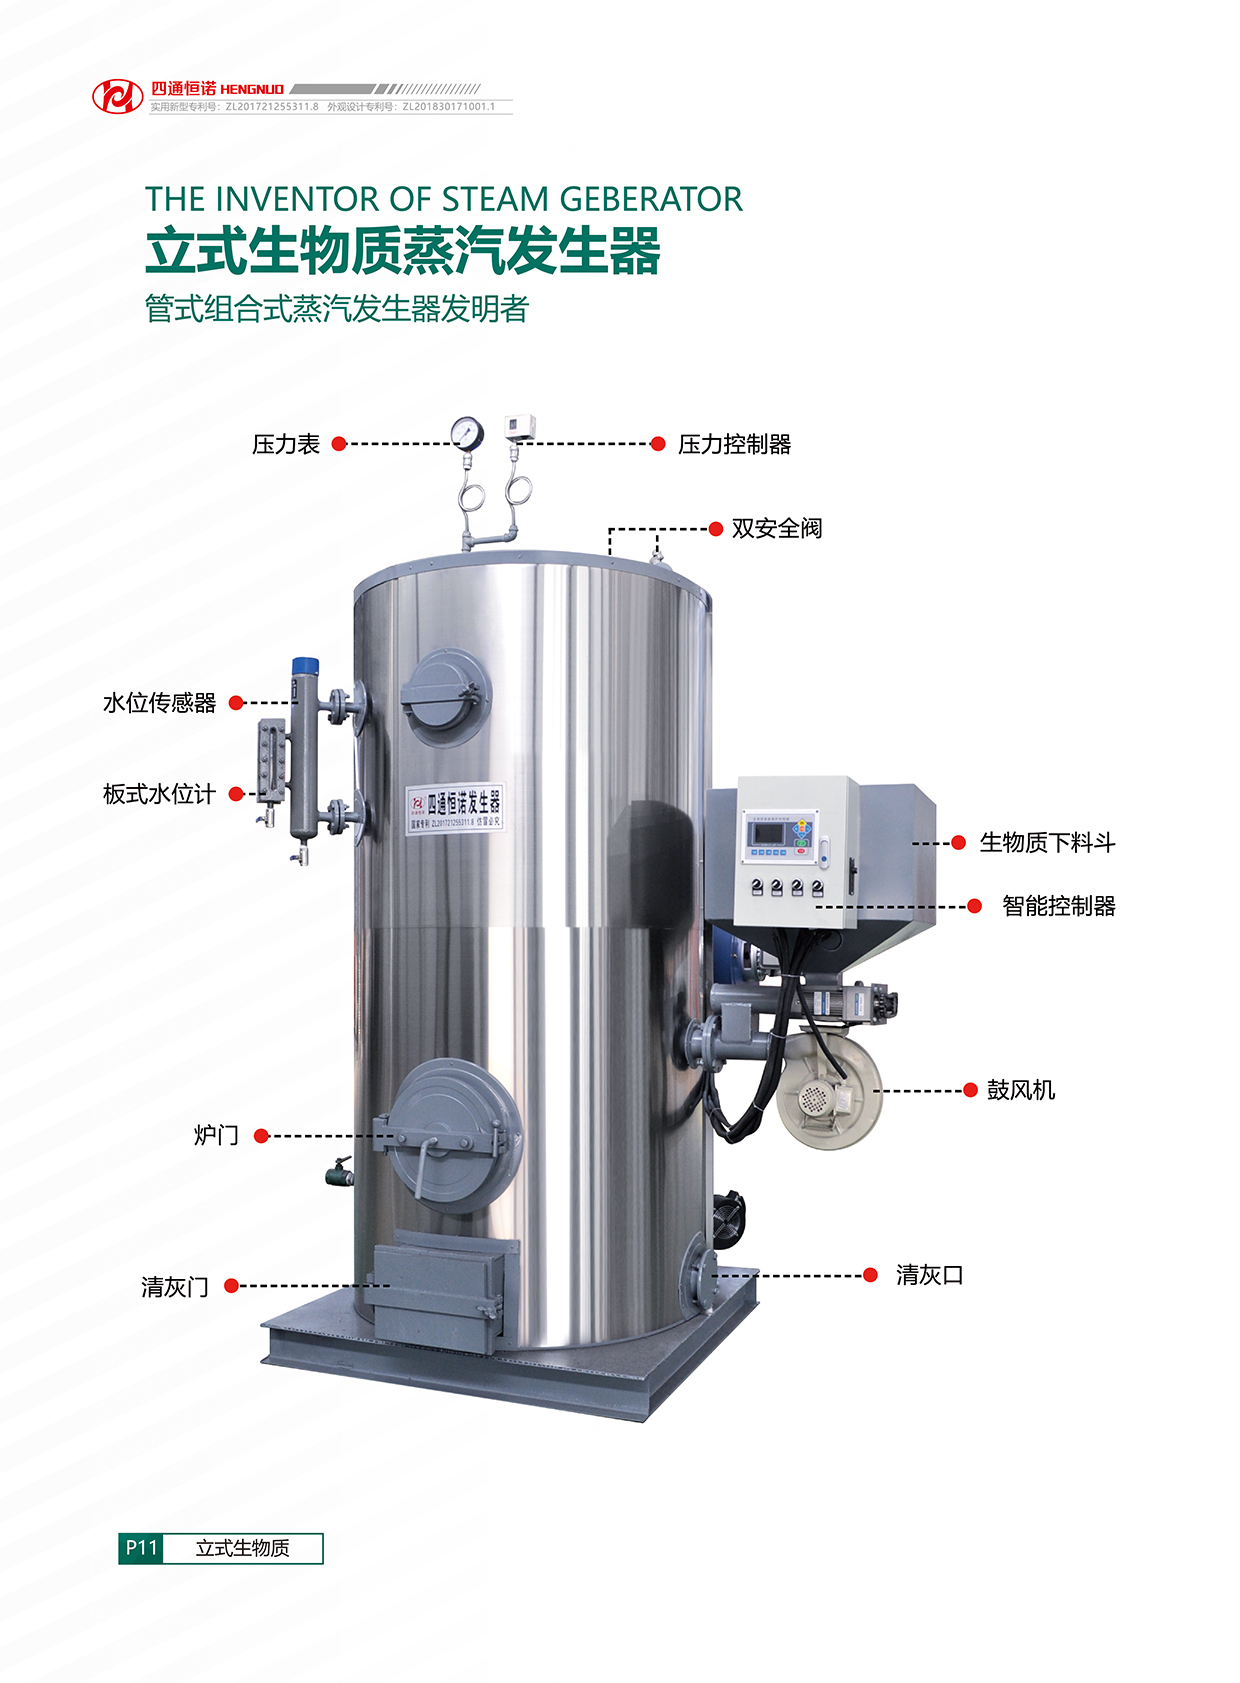 立式蒸汽发生器 燃气蒸汽发生器 蒸汽发生器 节能蒸汽发生器